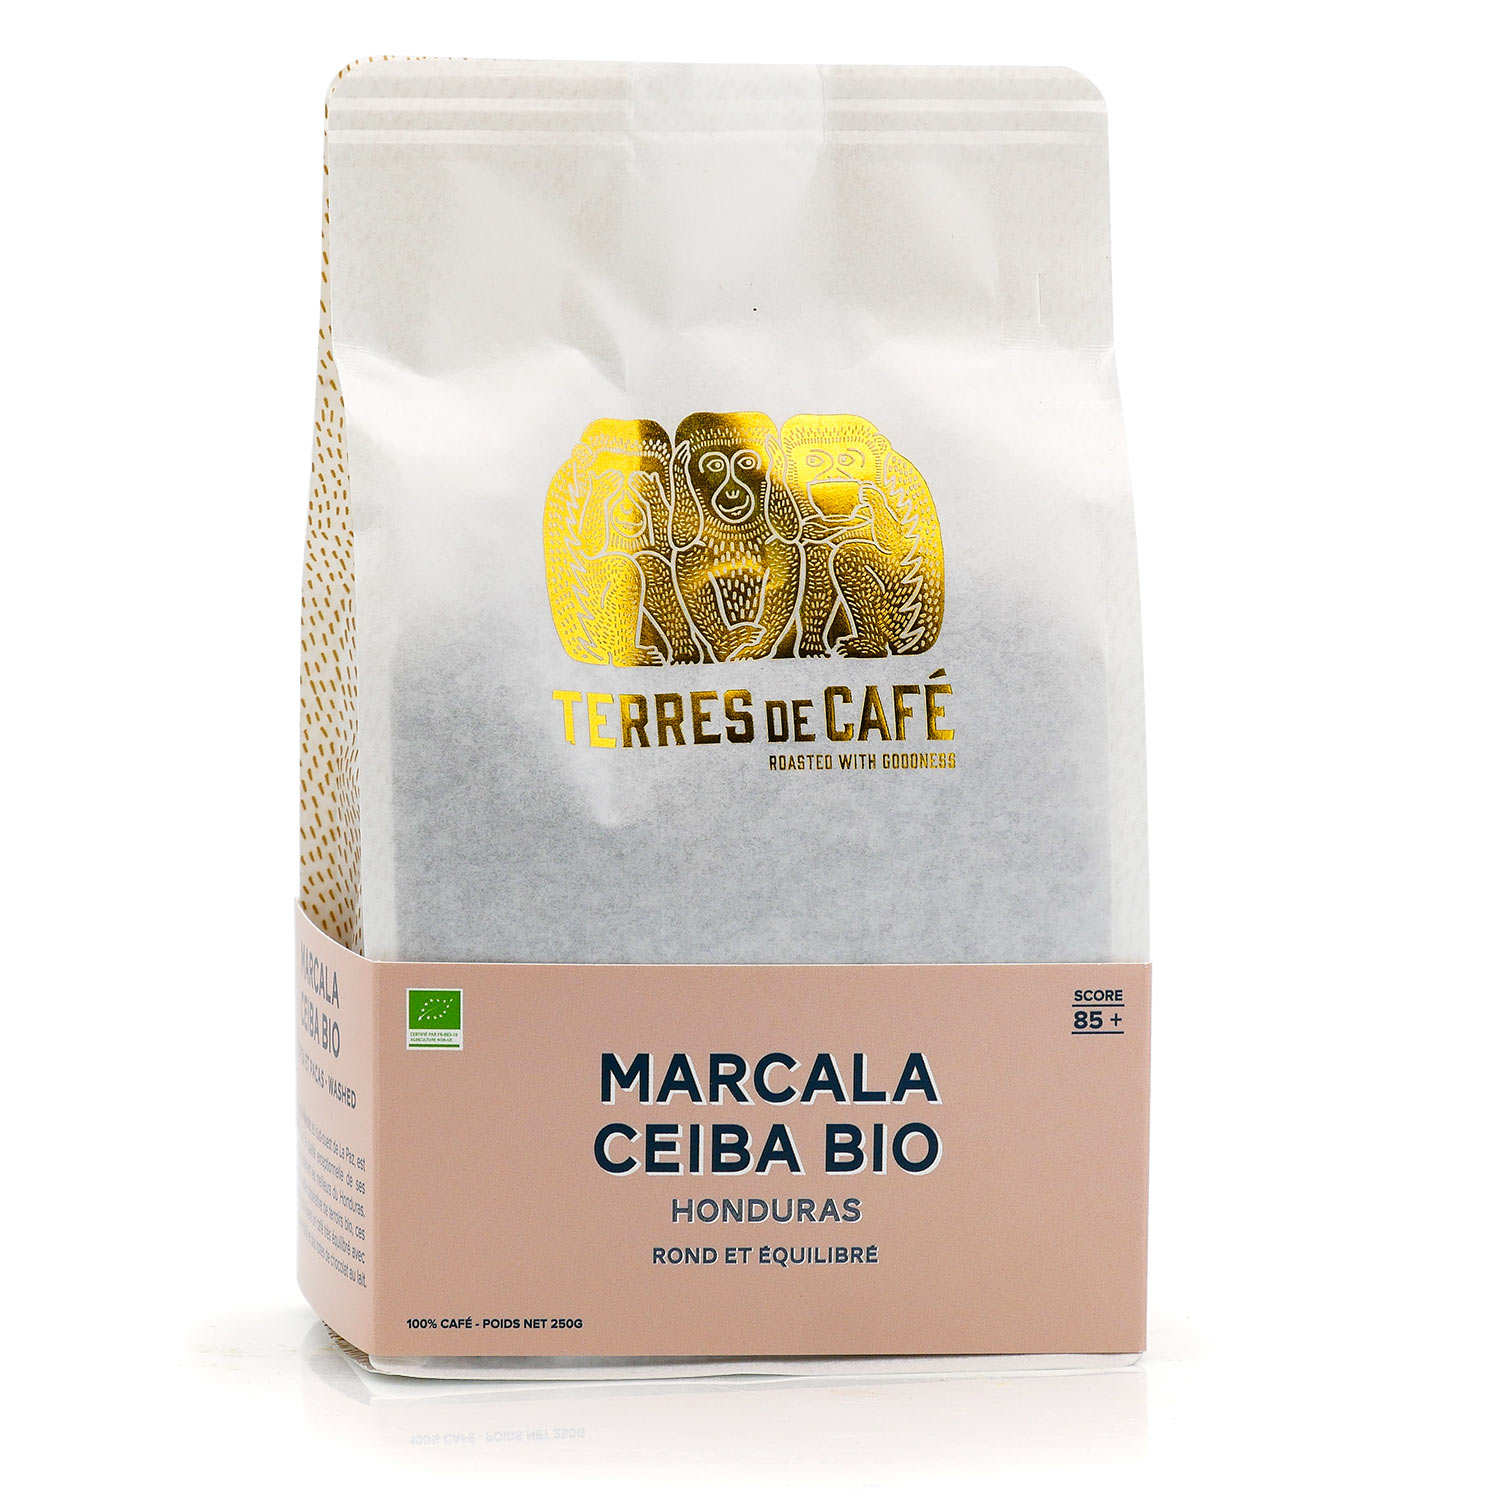 Organic coffee beans Marcala Ceiba - Specialty coffee 85+ - Terres de Café